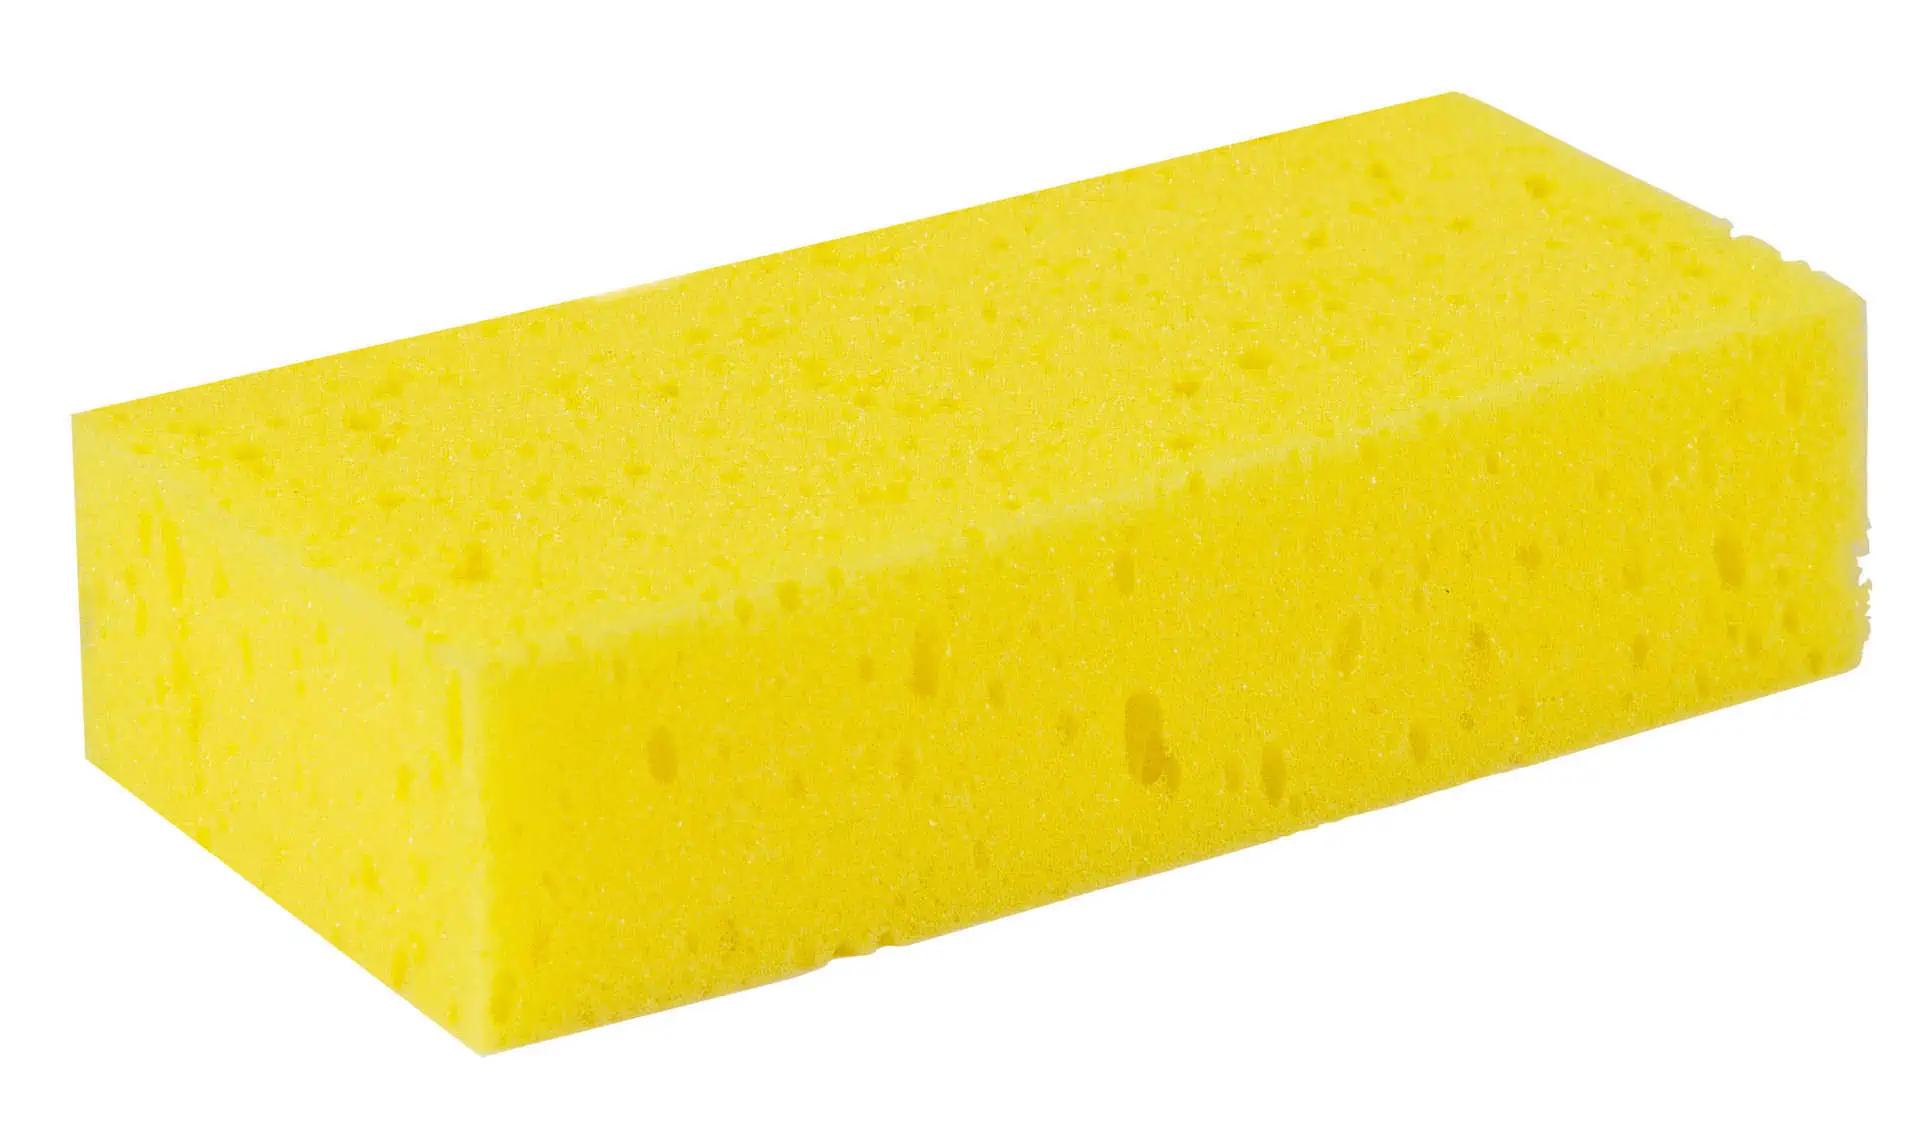 Grooming sponge, made of foam 